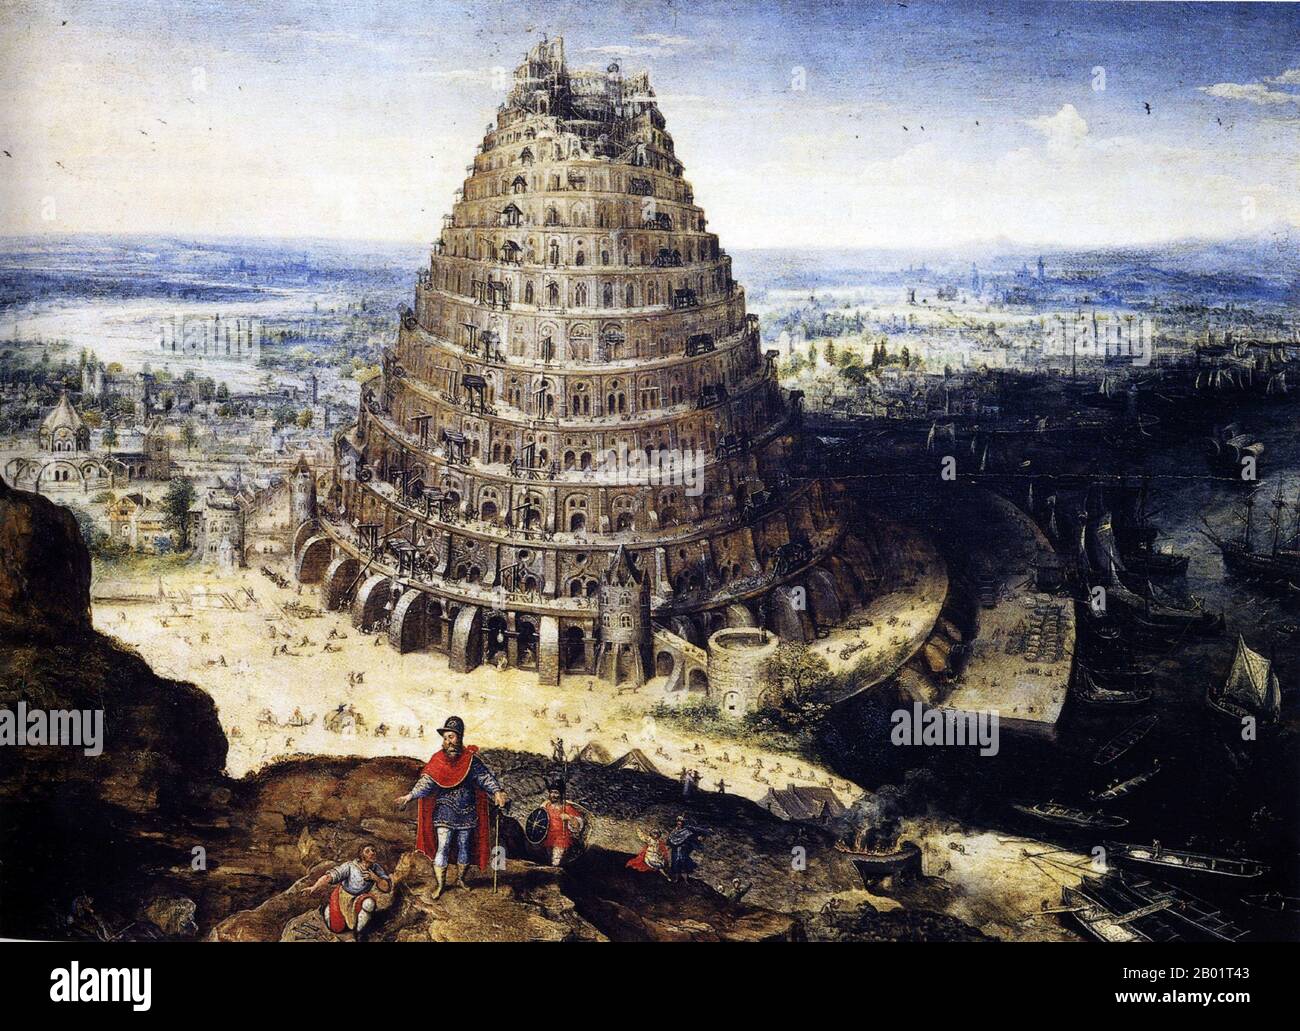 Belgien/Irak/Mesopotamien: "Der Turm von Babel". Öl auf Tafelgemälde von Lucas Van Valckenborch (1535 - 2. Februar 1597), 1594. Der Turm von Babel war nach dem Buch Genesis ein riesiger Turm, der in der Ebene von Shinar errichtet wurde. Nach der biblischen Erzählung kam eine vereinte Menschheit der Generationen nach der Großen Flut, die eine einzige Sprache sprach und aus dem Osten auswanderte, ins Land Shinar, wo sie beschlossen, eine Stadt mit einem Turm zu bauen, „mit seiner Spitze im Himmel... damit wir nicht auf der Erde verstreut werden“. Stockfoto